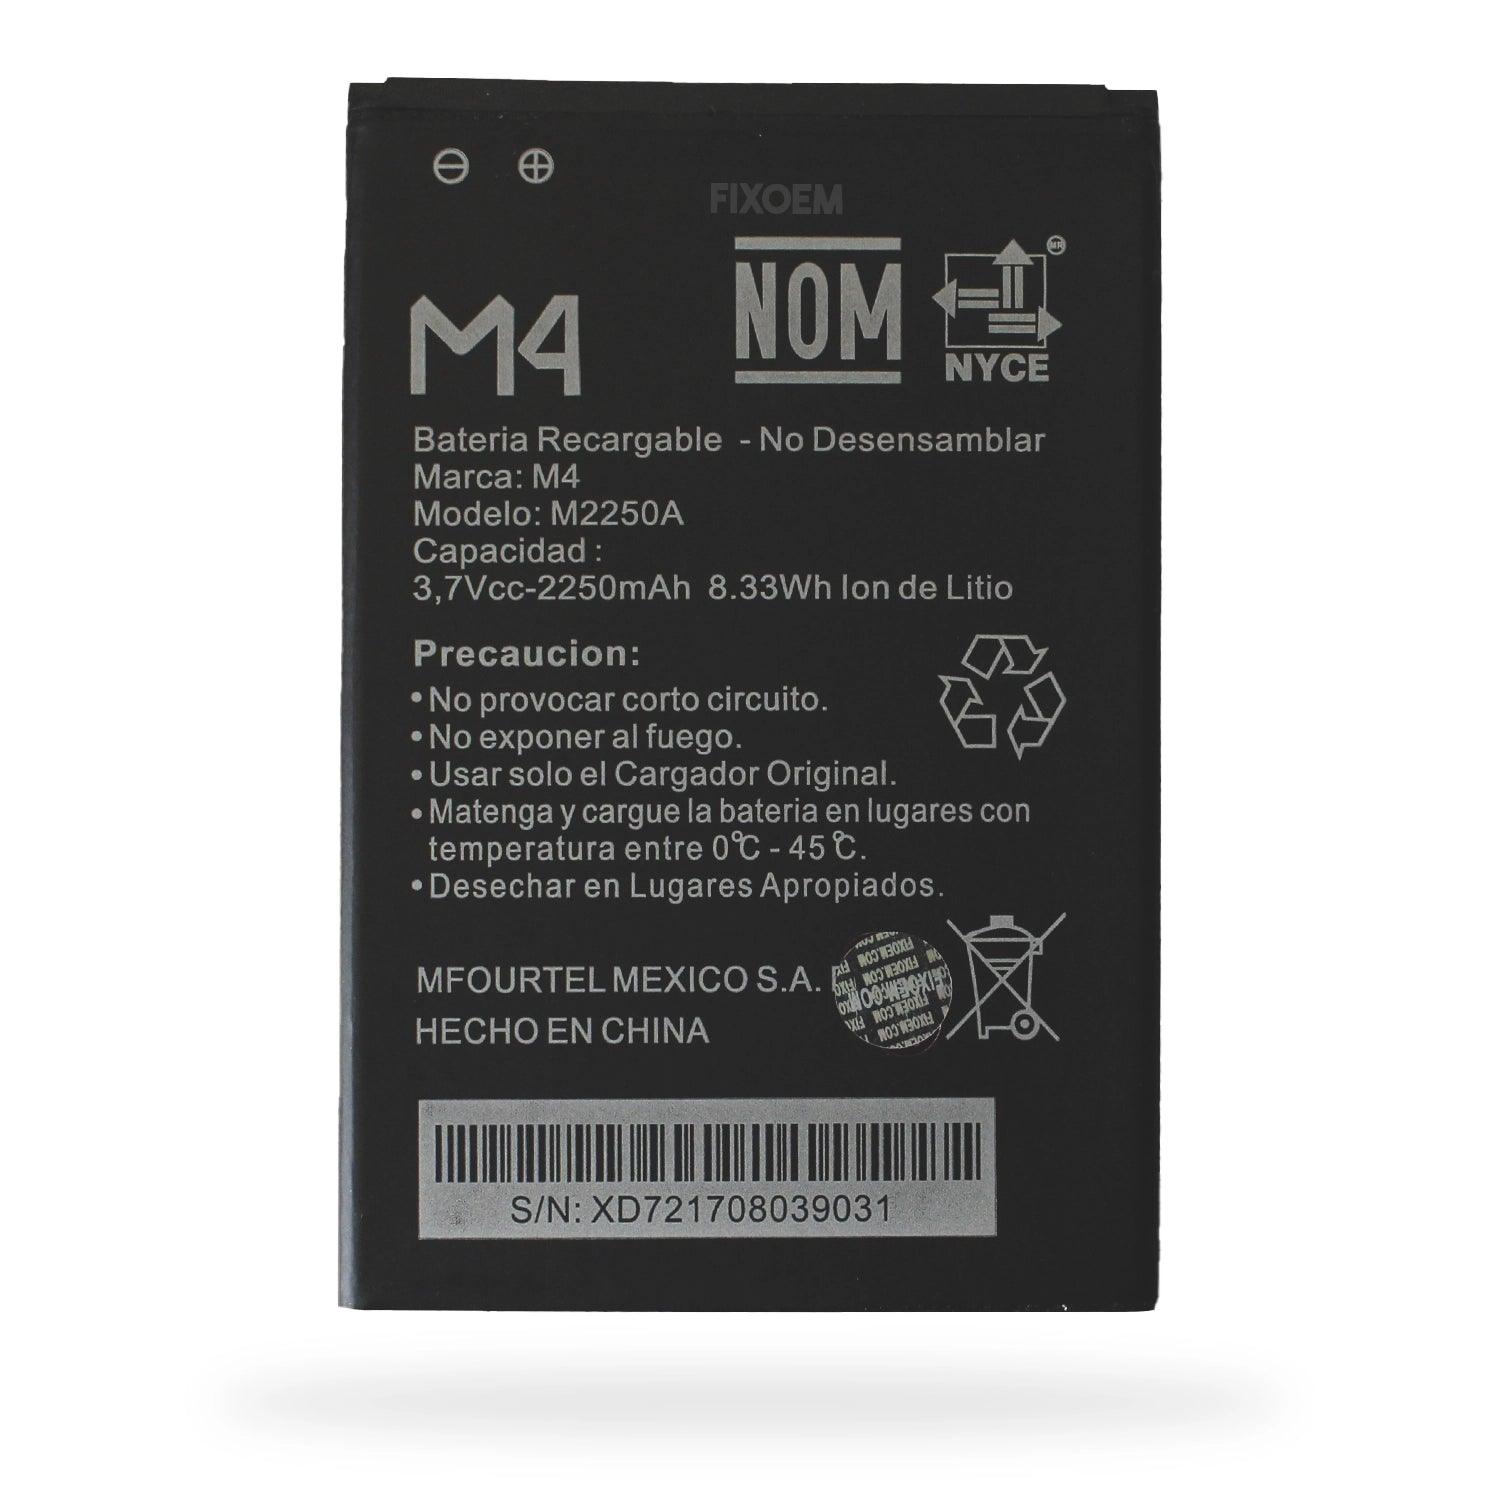 Bateria M4 SS4450 / SS4452 M2250a a solo $ 80.00 Refaccion y puestos celulares, refurbish y microelectronica.- FixOEM